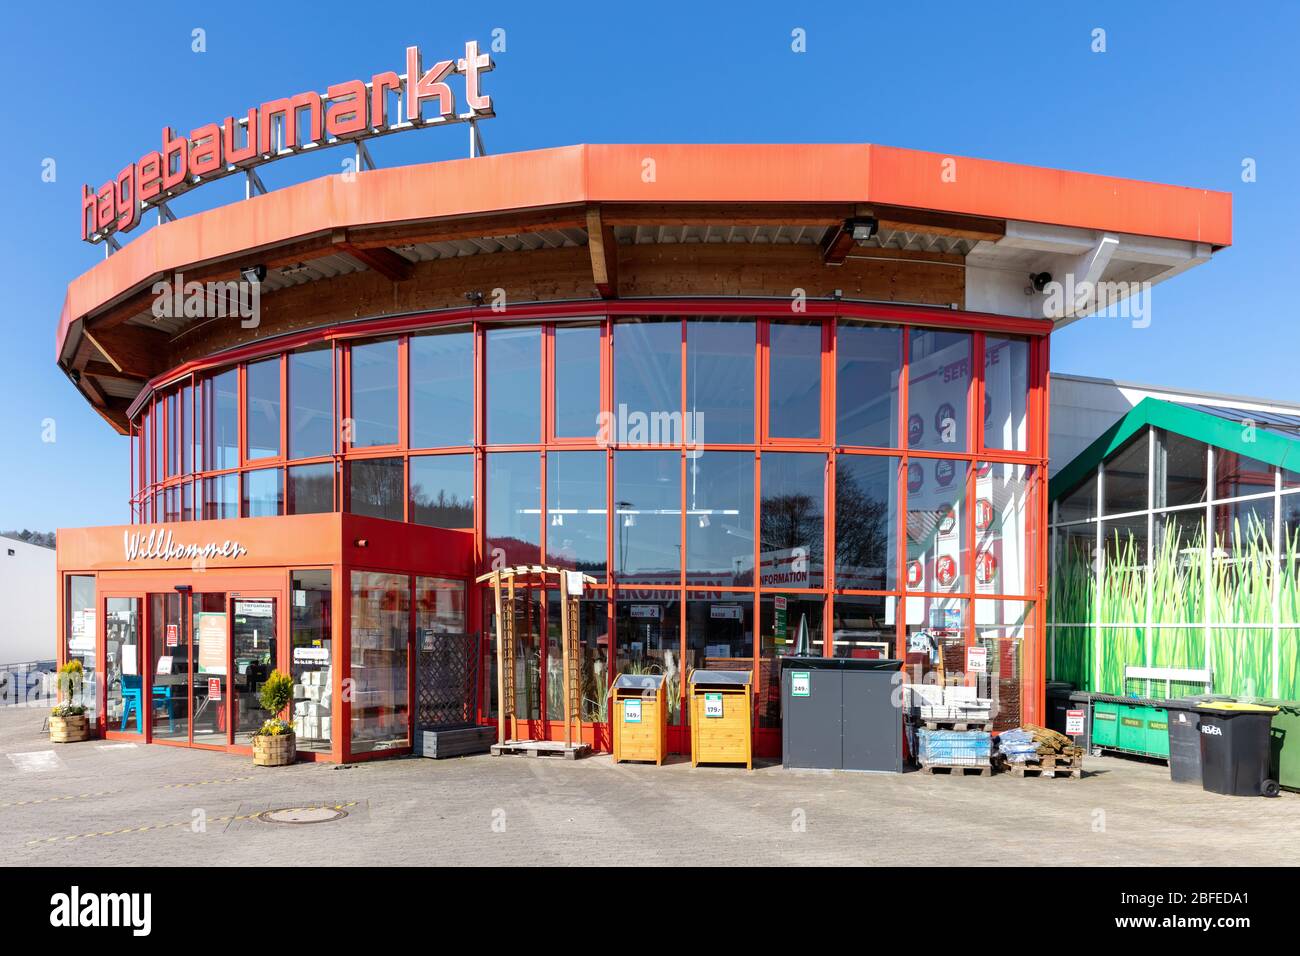 Negozio di hardware Hagebaumarkt a Overath, Germania. Hagebaumarkt è una catena tedesca di negozi fai da te che offre il miglioramento della casa e di beni fai-da-te. Foto Stock